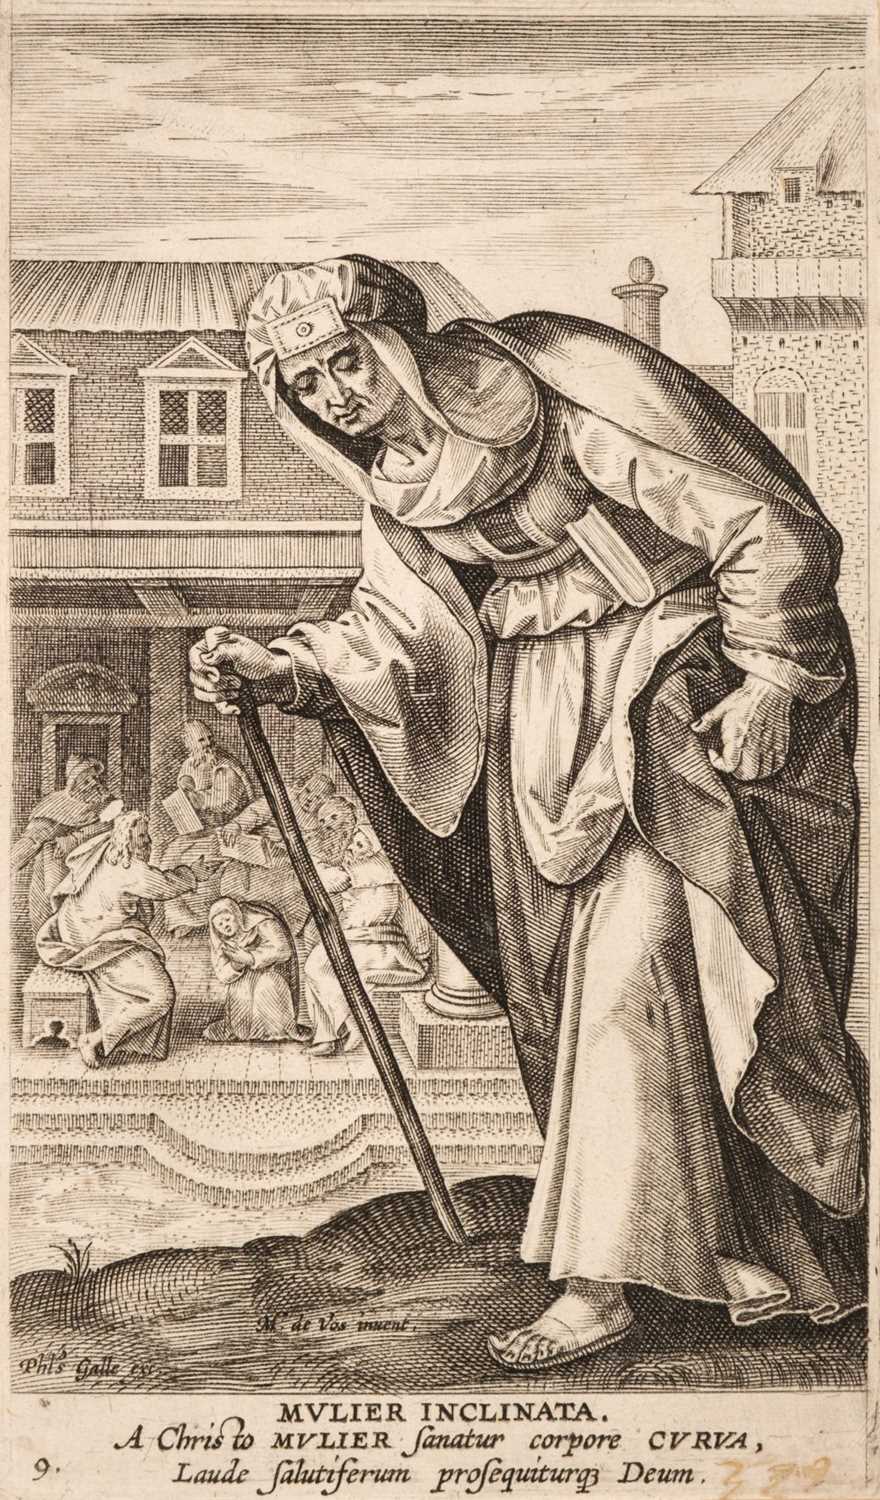 Lot 40 - De Vos (Martin). Mulier Inclinata (plate 9 from Icones Illustrium Feminarum Novi Testamenti), circa 1590-1612, etching